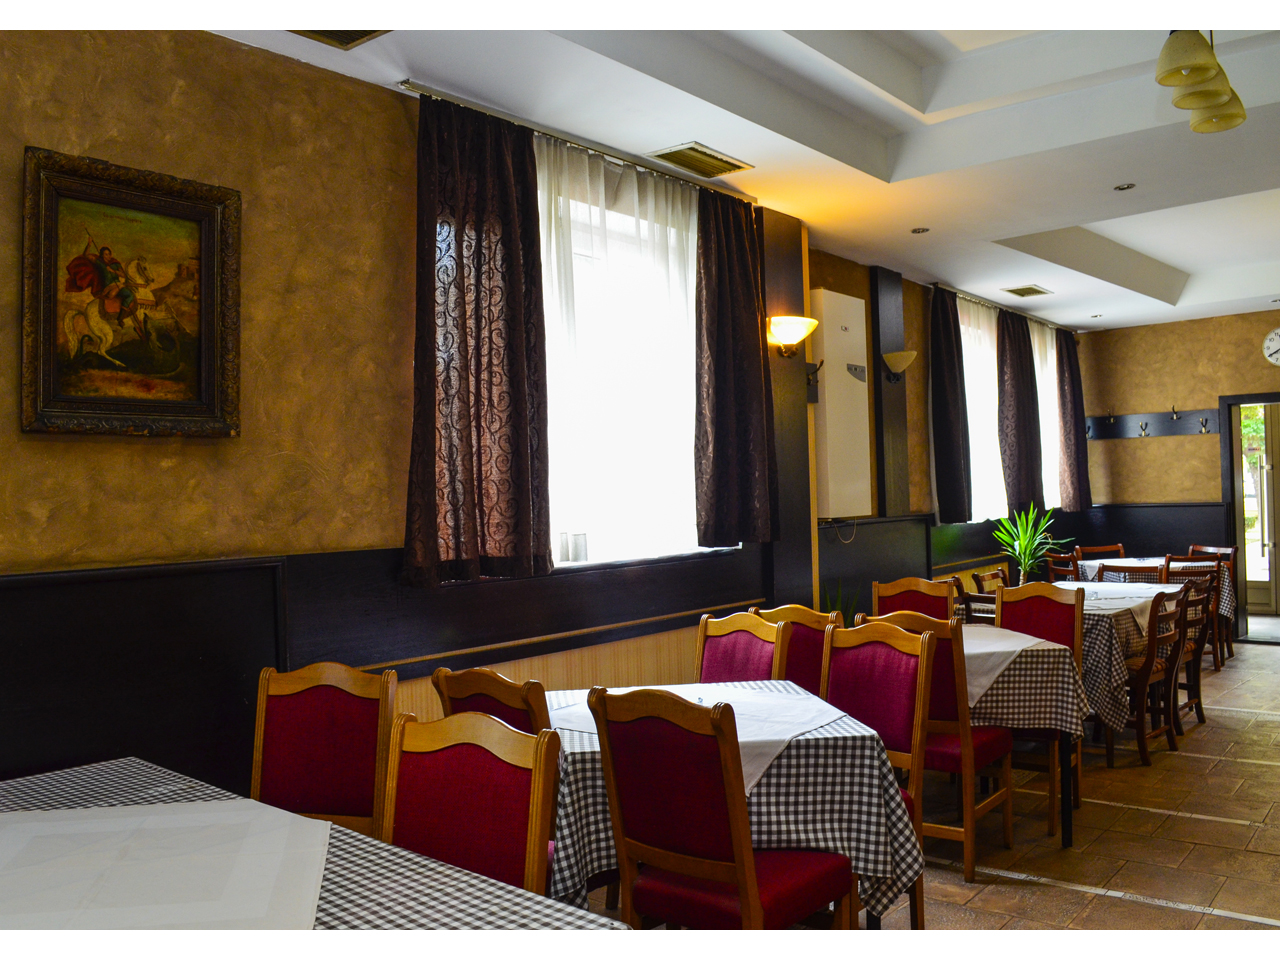 RESTAURANT DUBOCICA Restaurants Belgrade - Photo 4